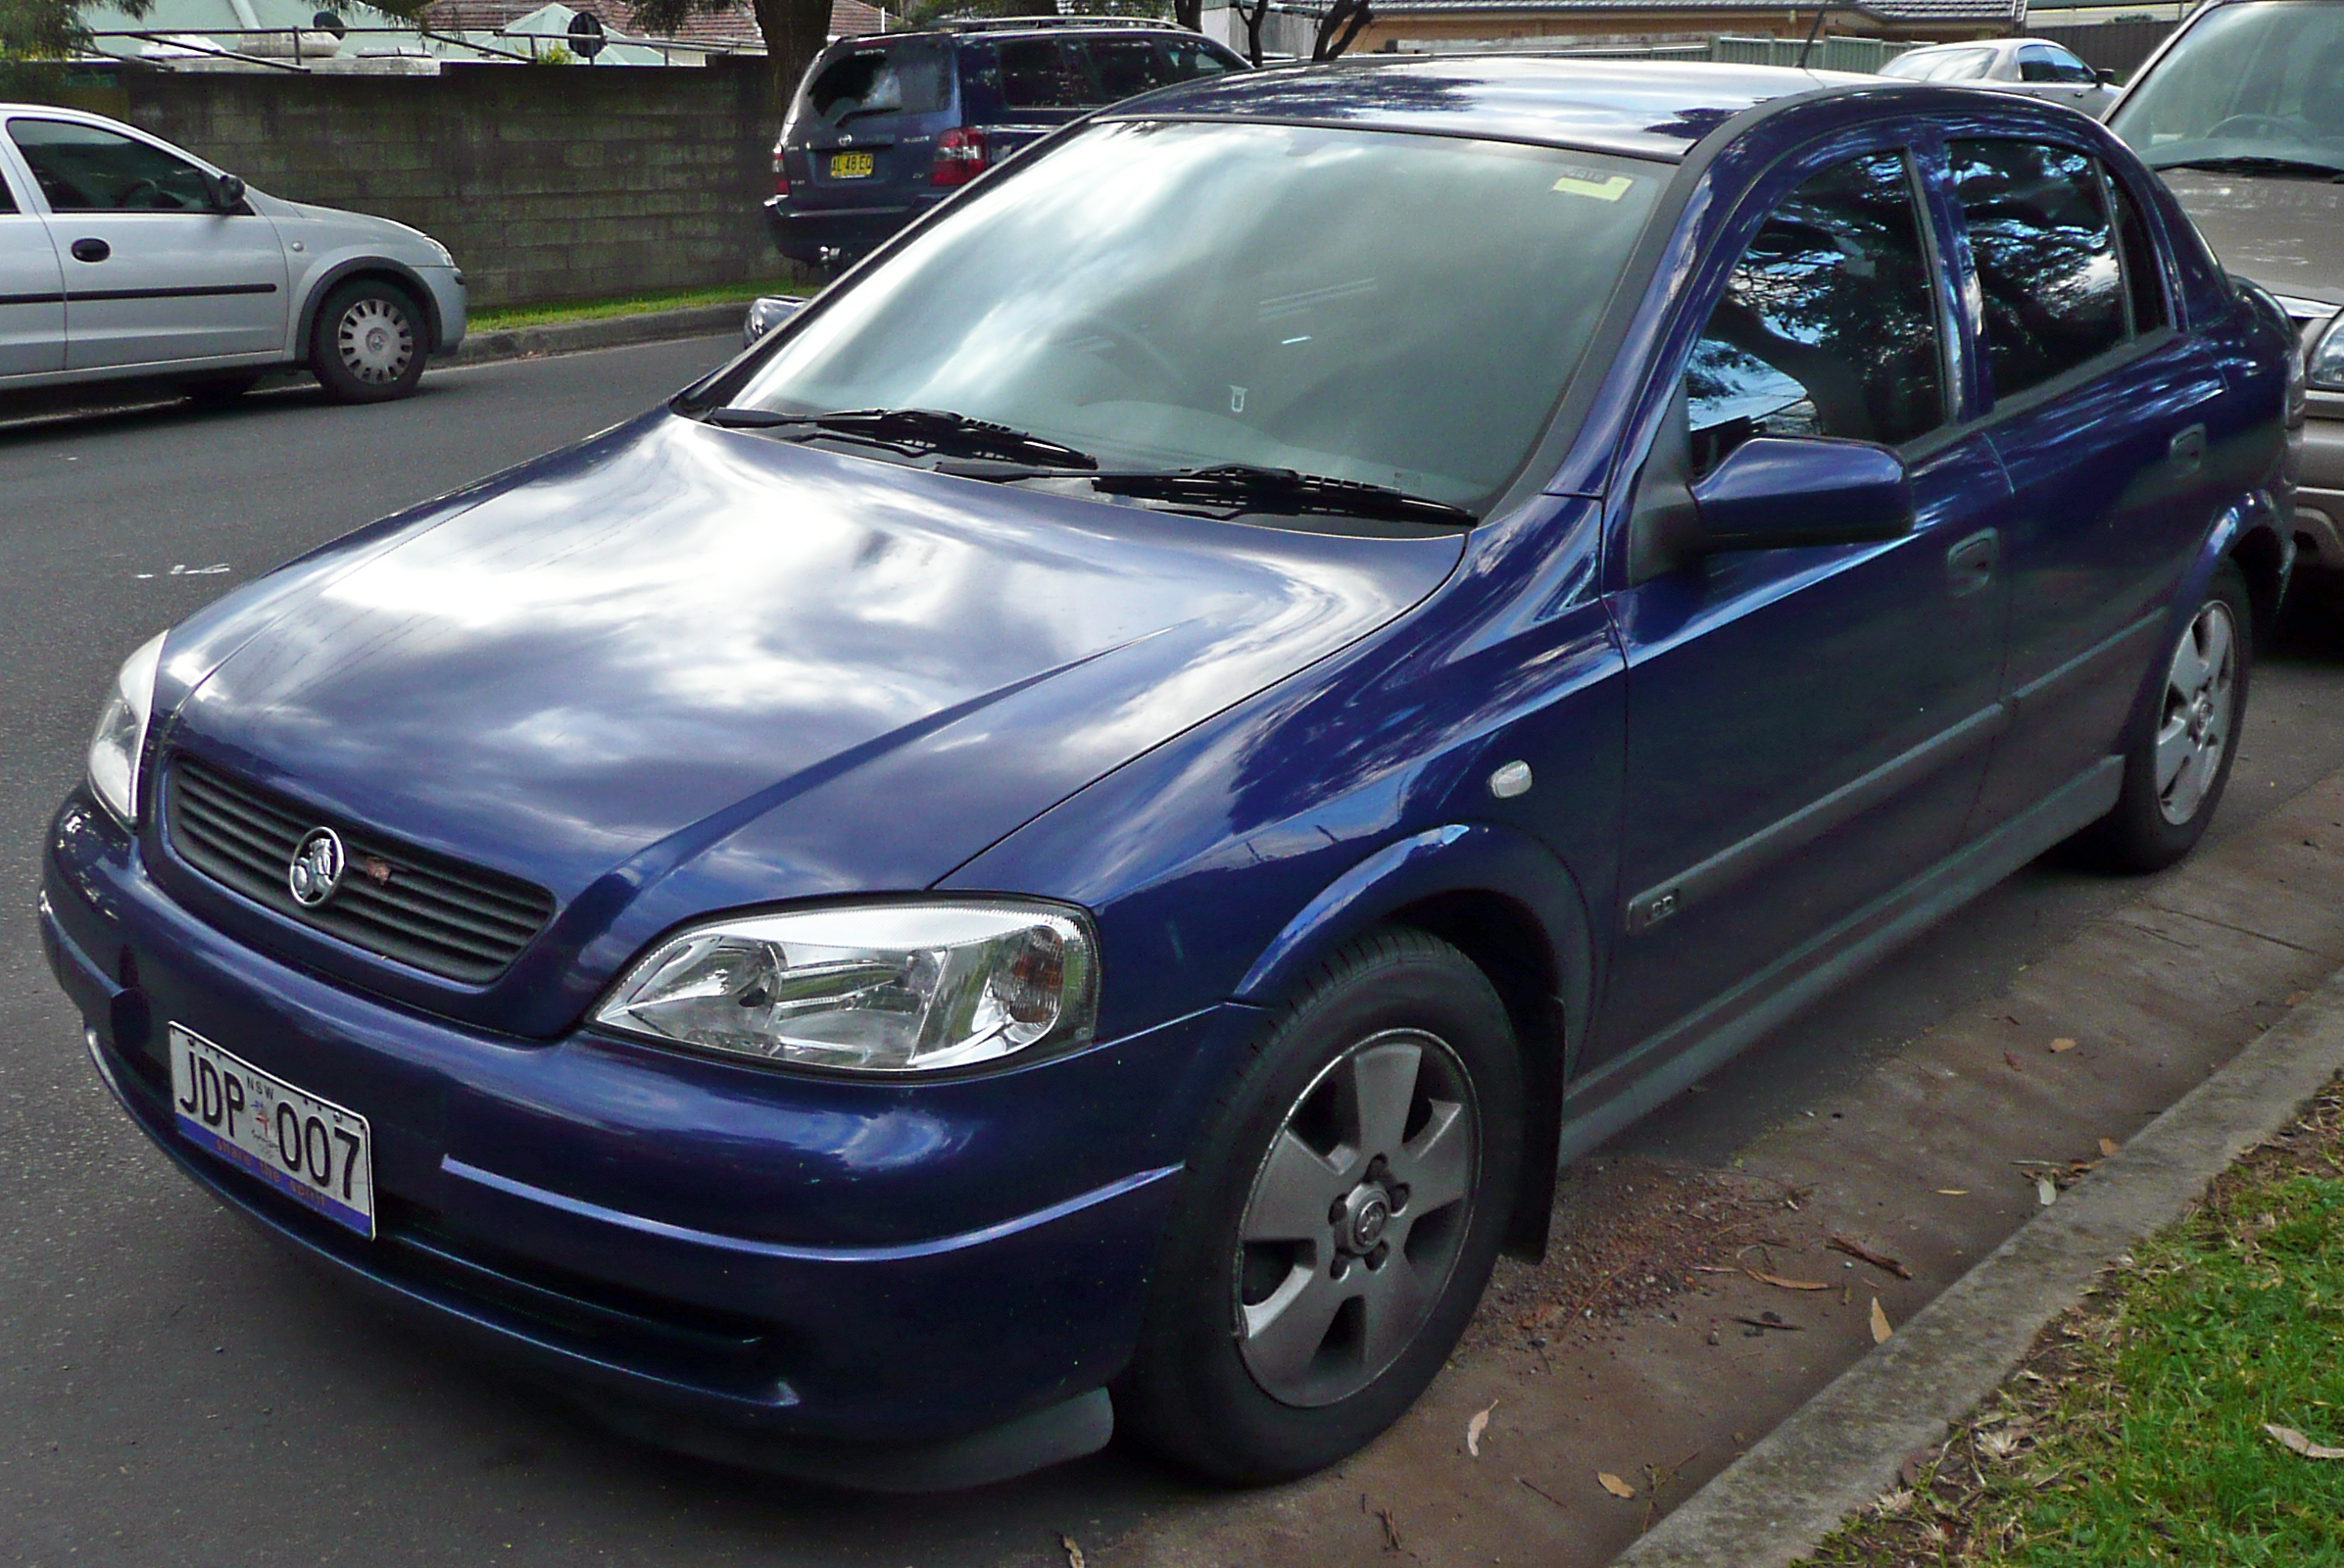 5, Holden Astra CD 18